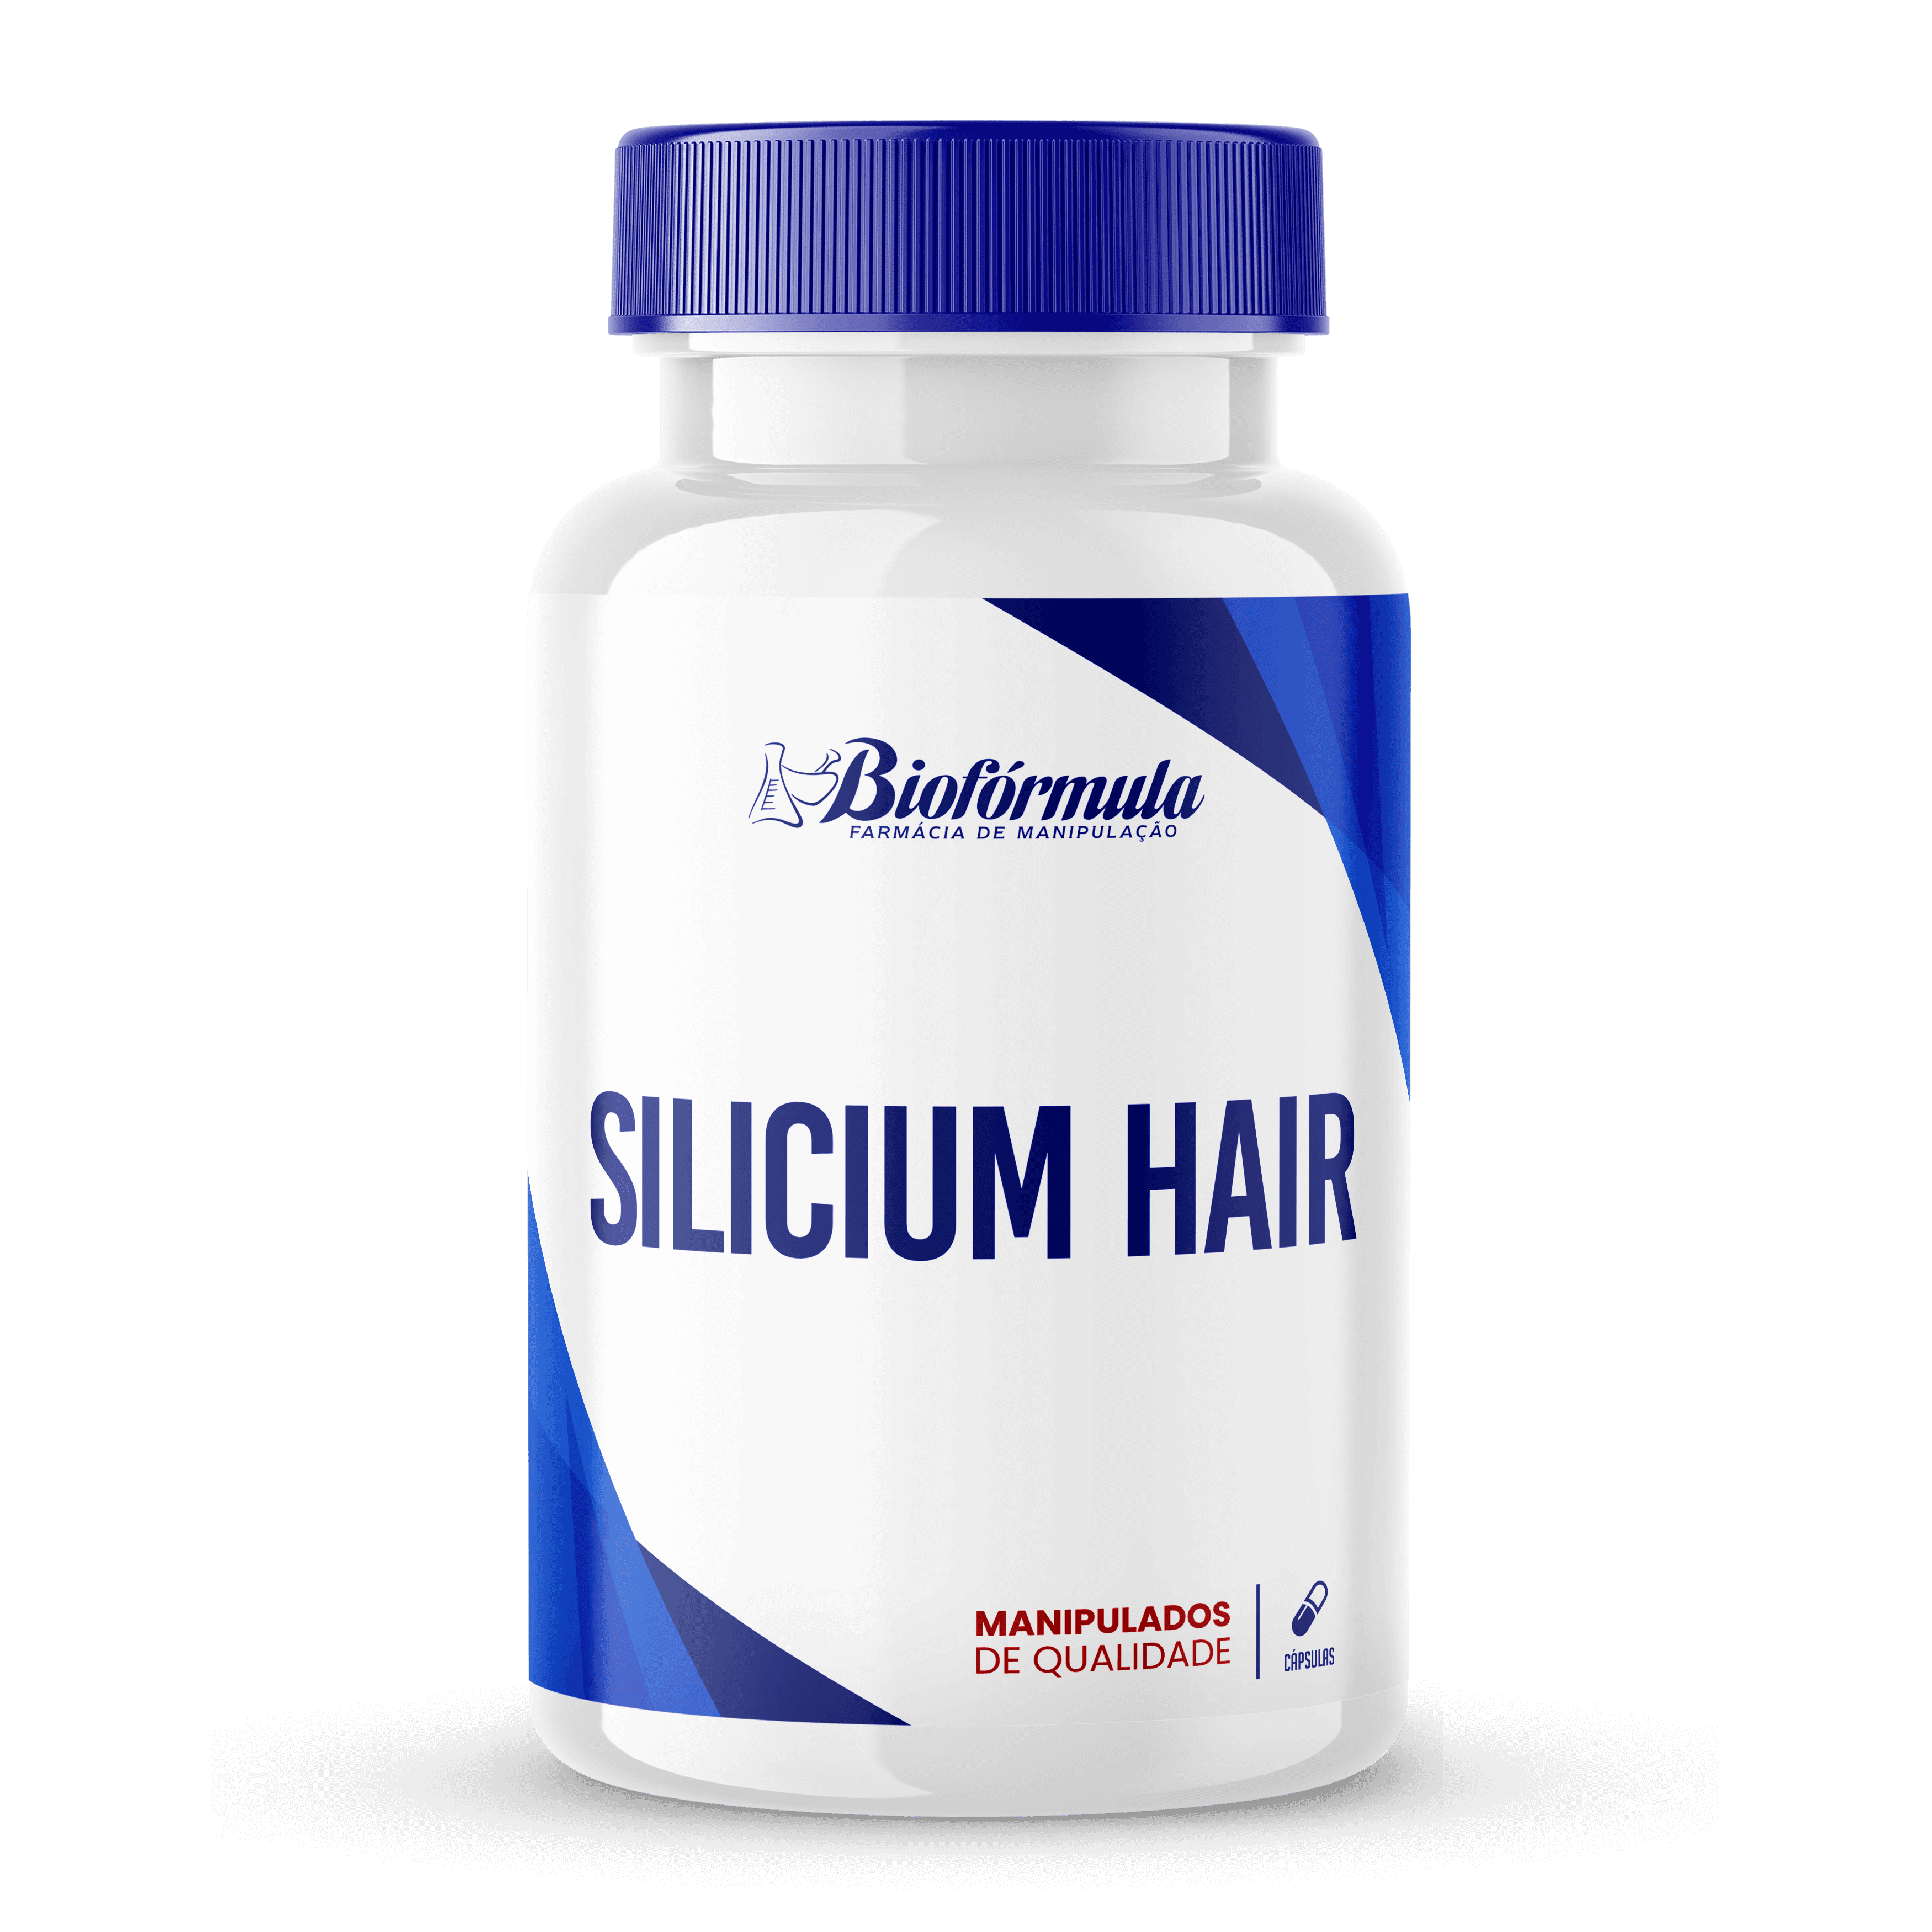 Imagem do Silicium Hair